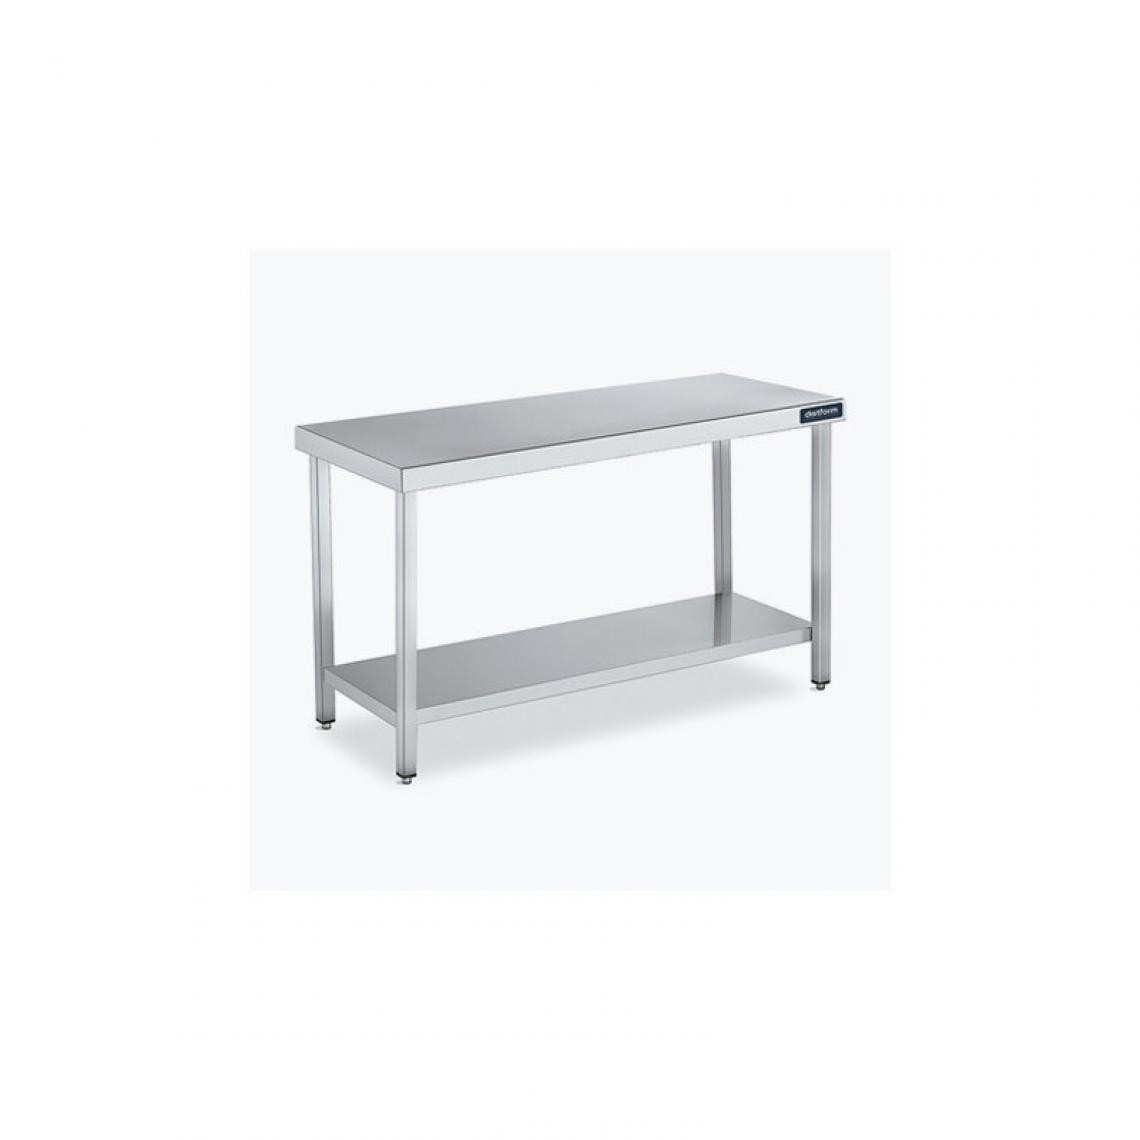 DISTFORM - Table Centrale 600x600 avec Étagère - Distform - Inox 18/101700x600x850mm - Tables à manger